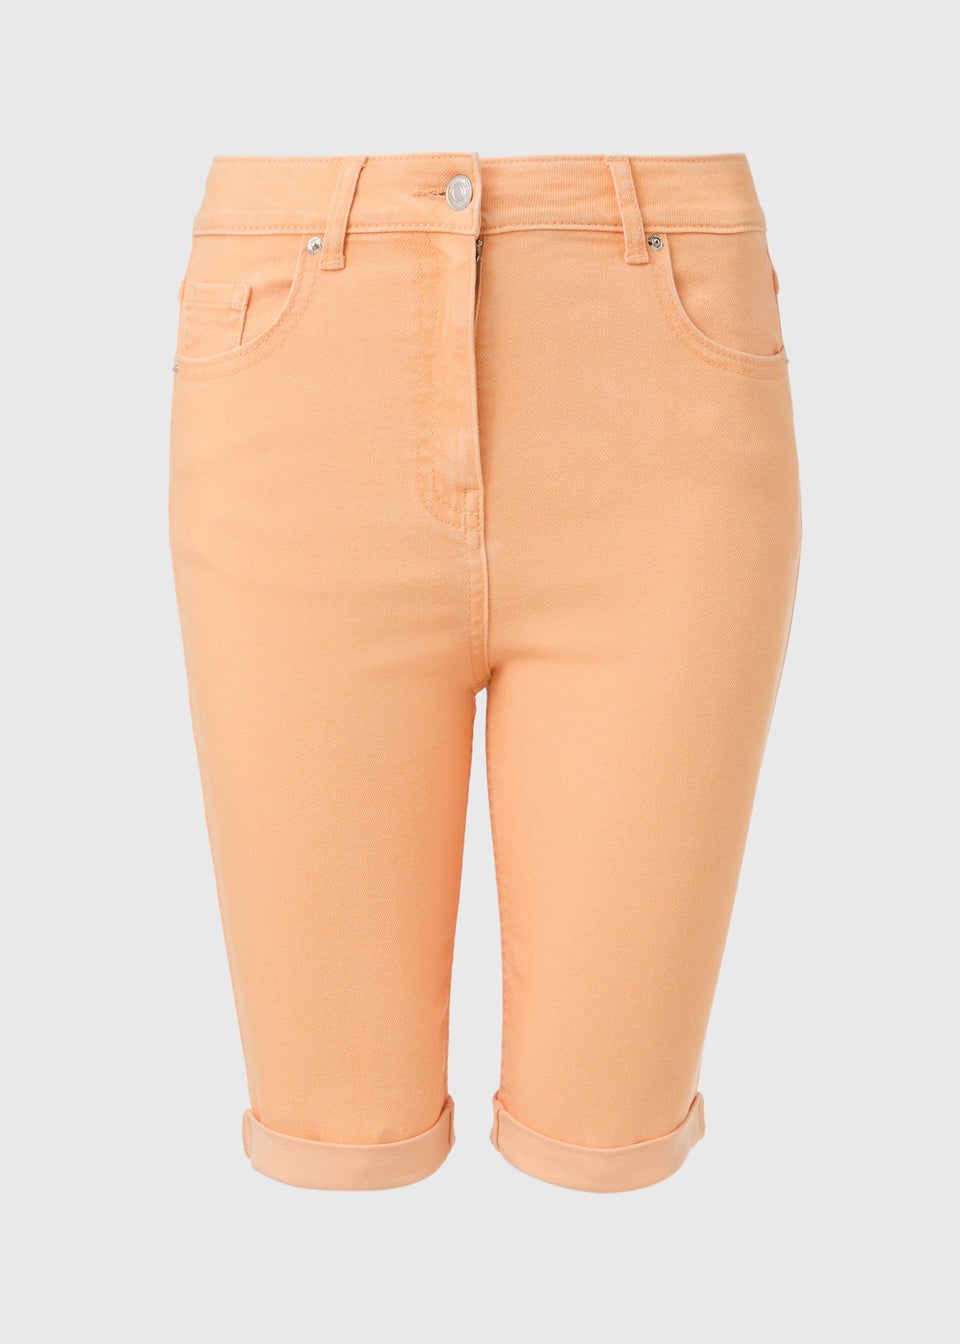 Peach Knee Shorts